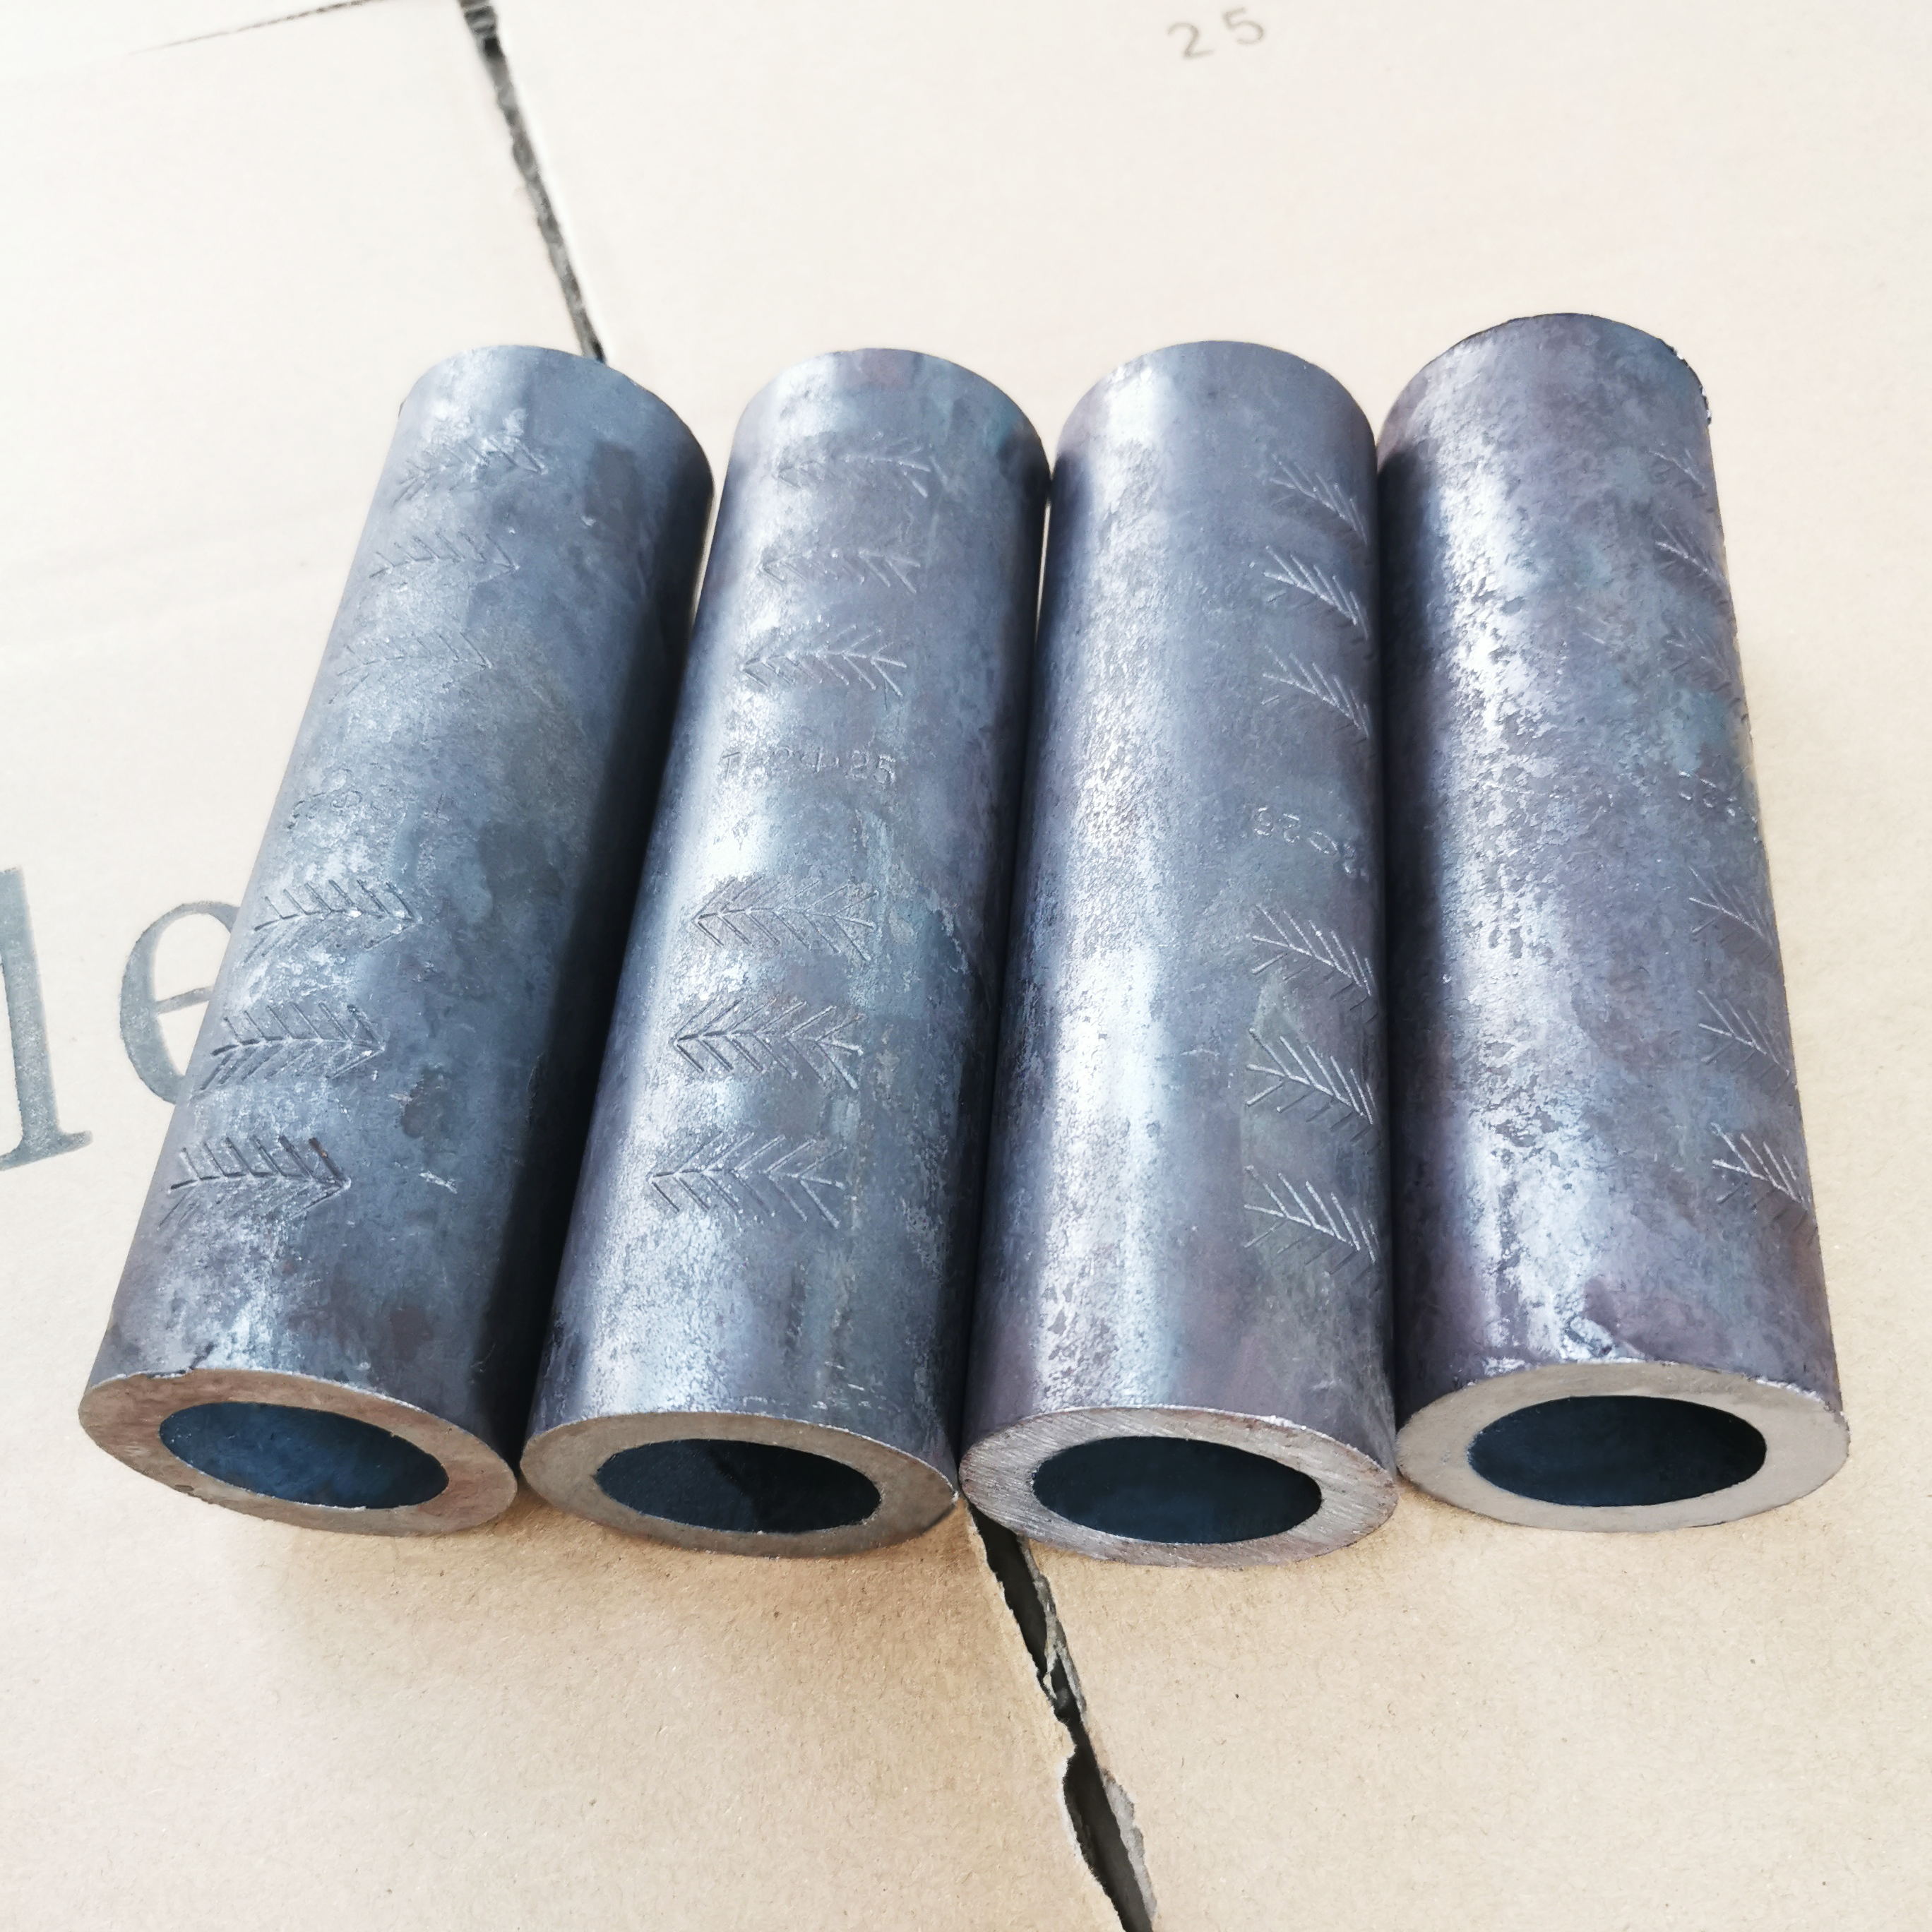 Stainless Steel Gancang Gancang Coupler bikang tiis extrusion leungeun baju panyambungna Diulas Gambar